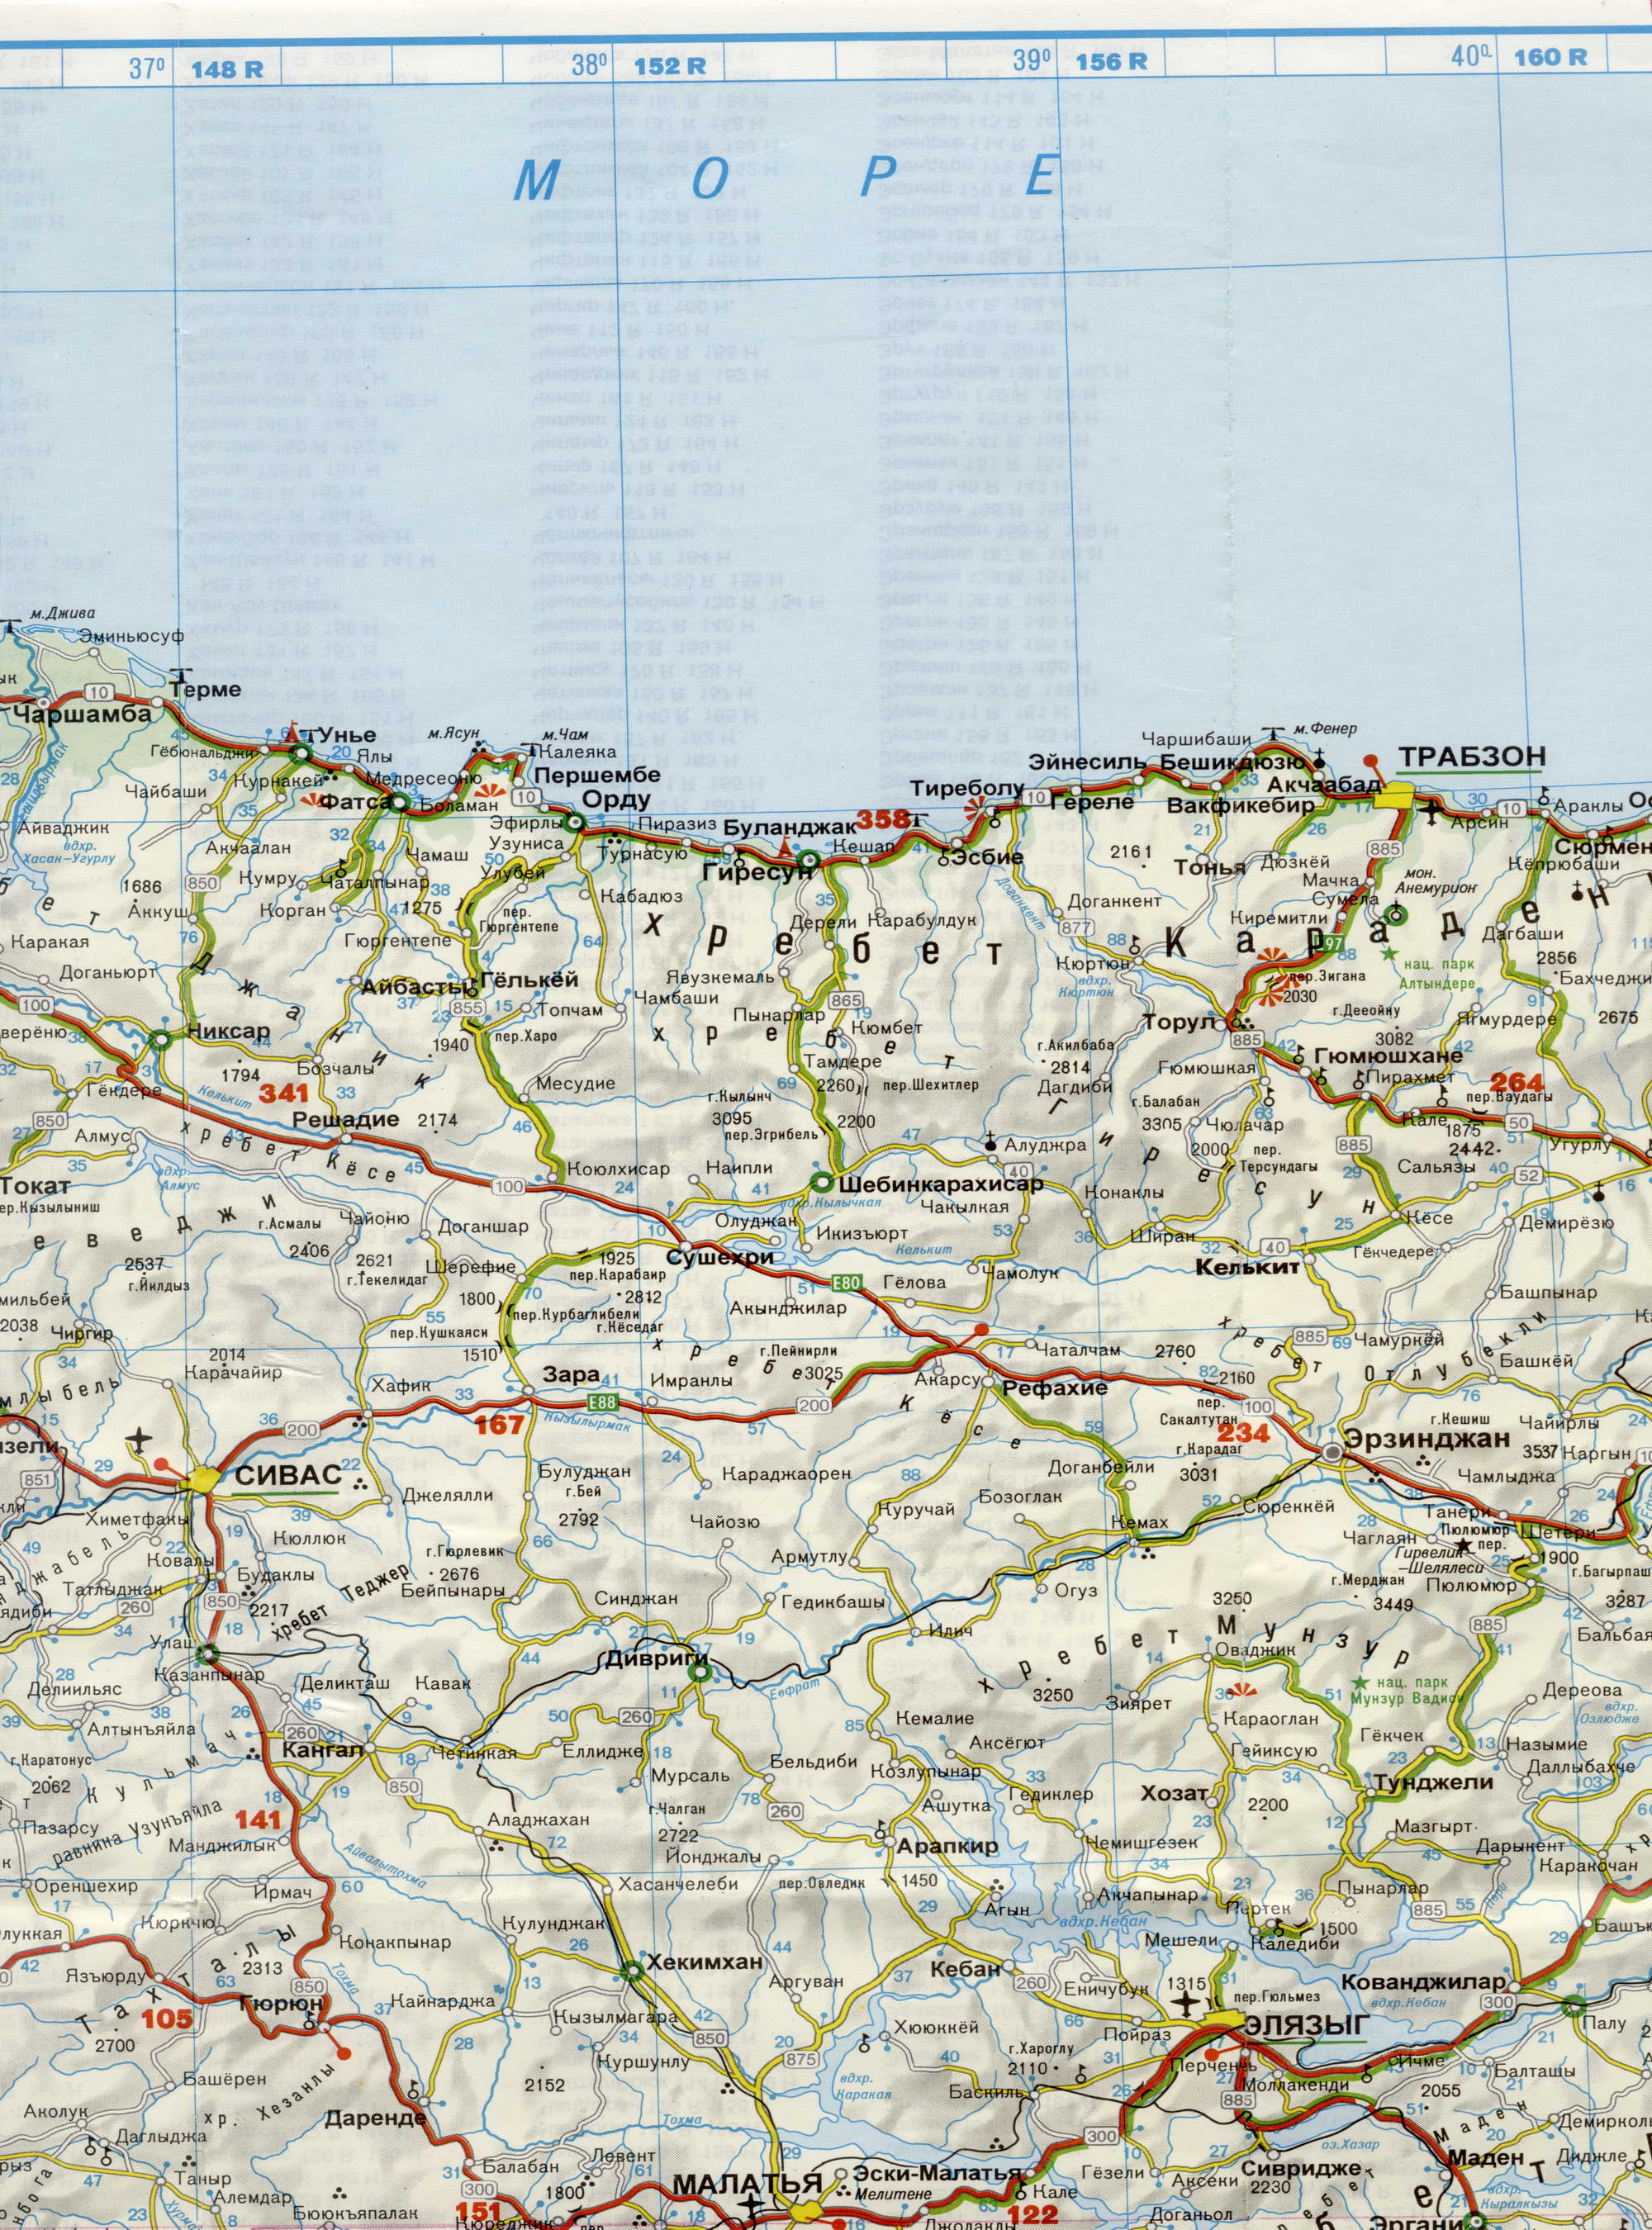 Автомобильная карта Турции на русском языке. Большая подробная карта Турции на русском языке. Автомобильная карта Турции, D0 - 